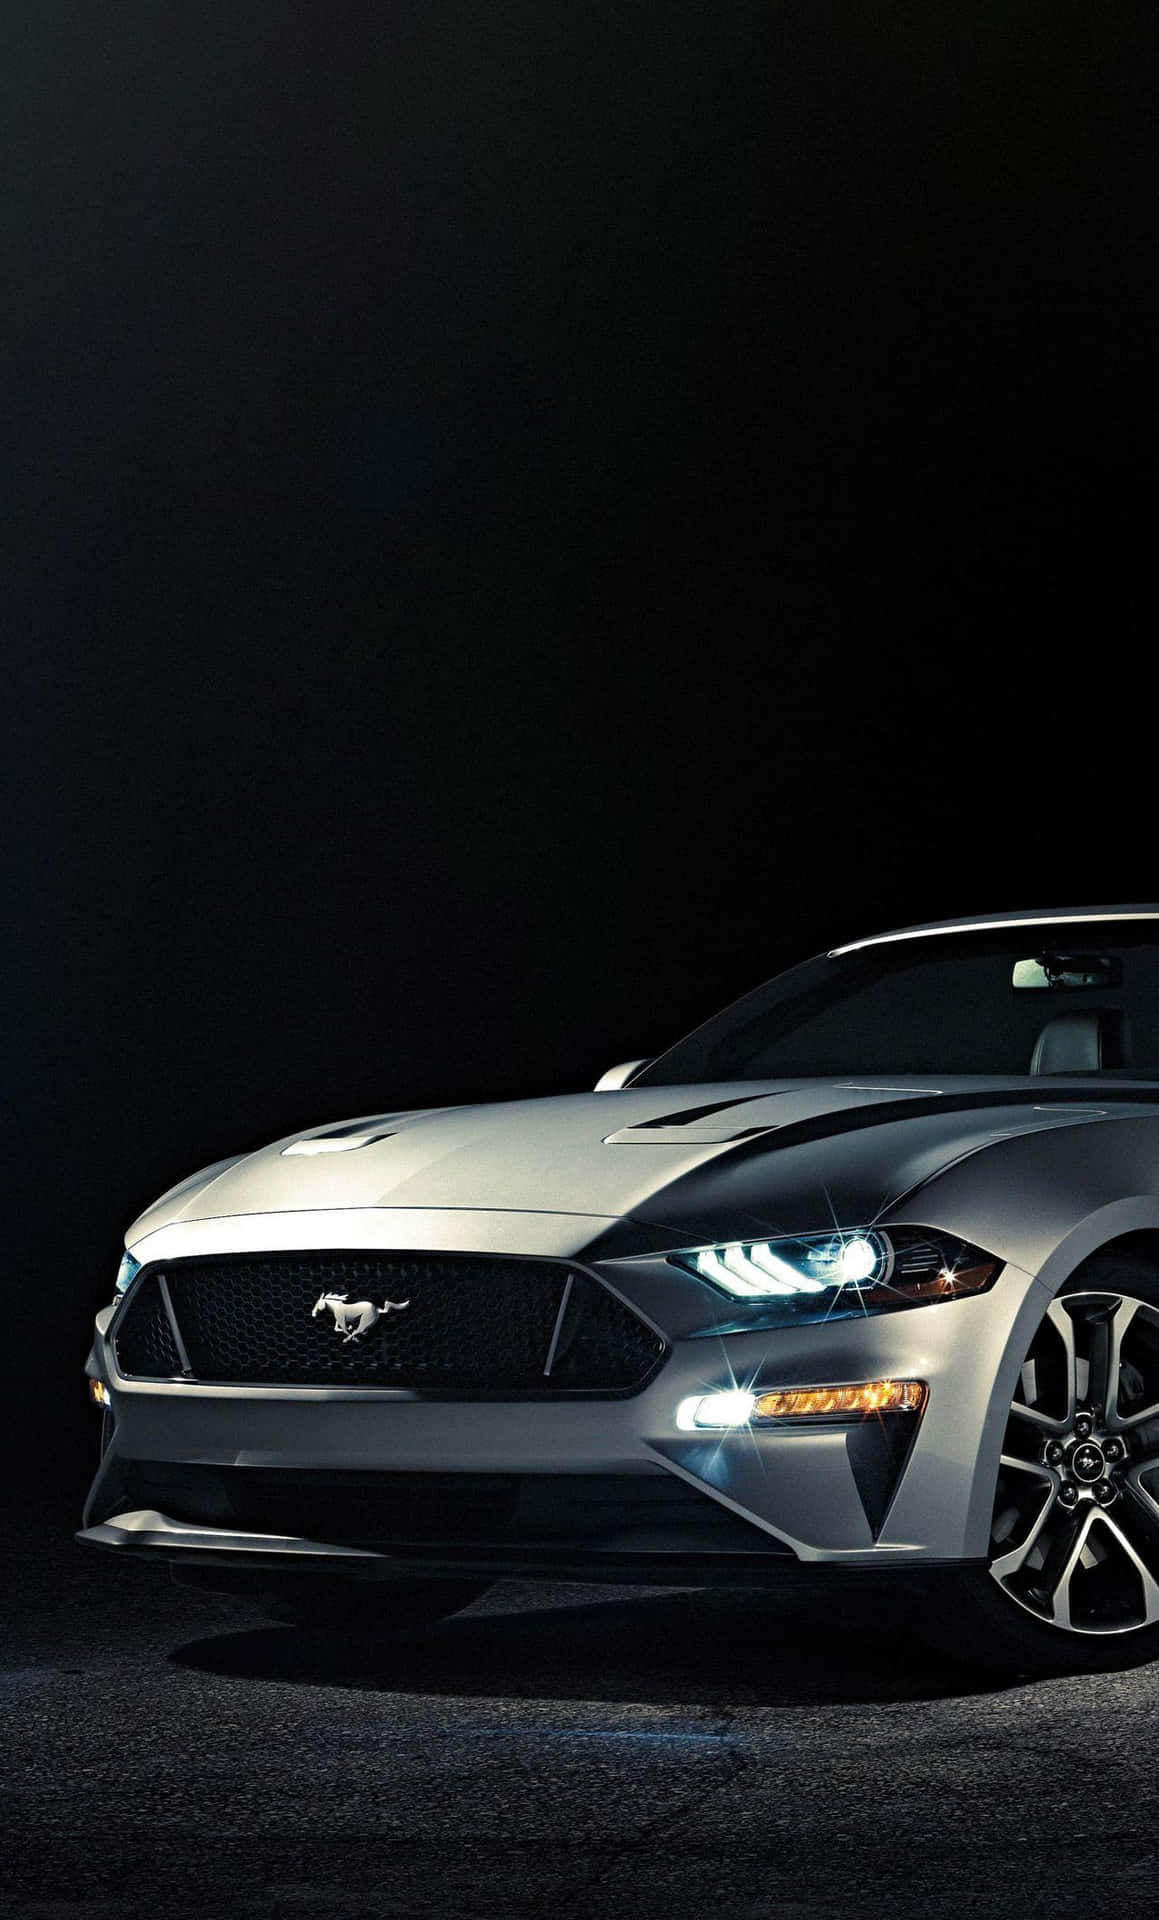 Den 2019 Ford Mustang er vist i et mørkt rum. Wallpaper